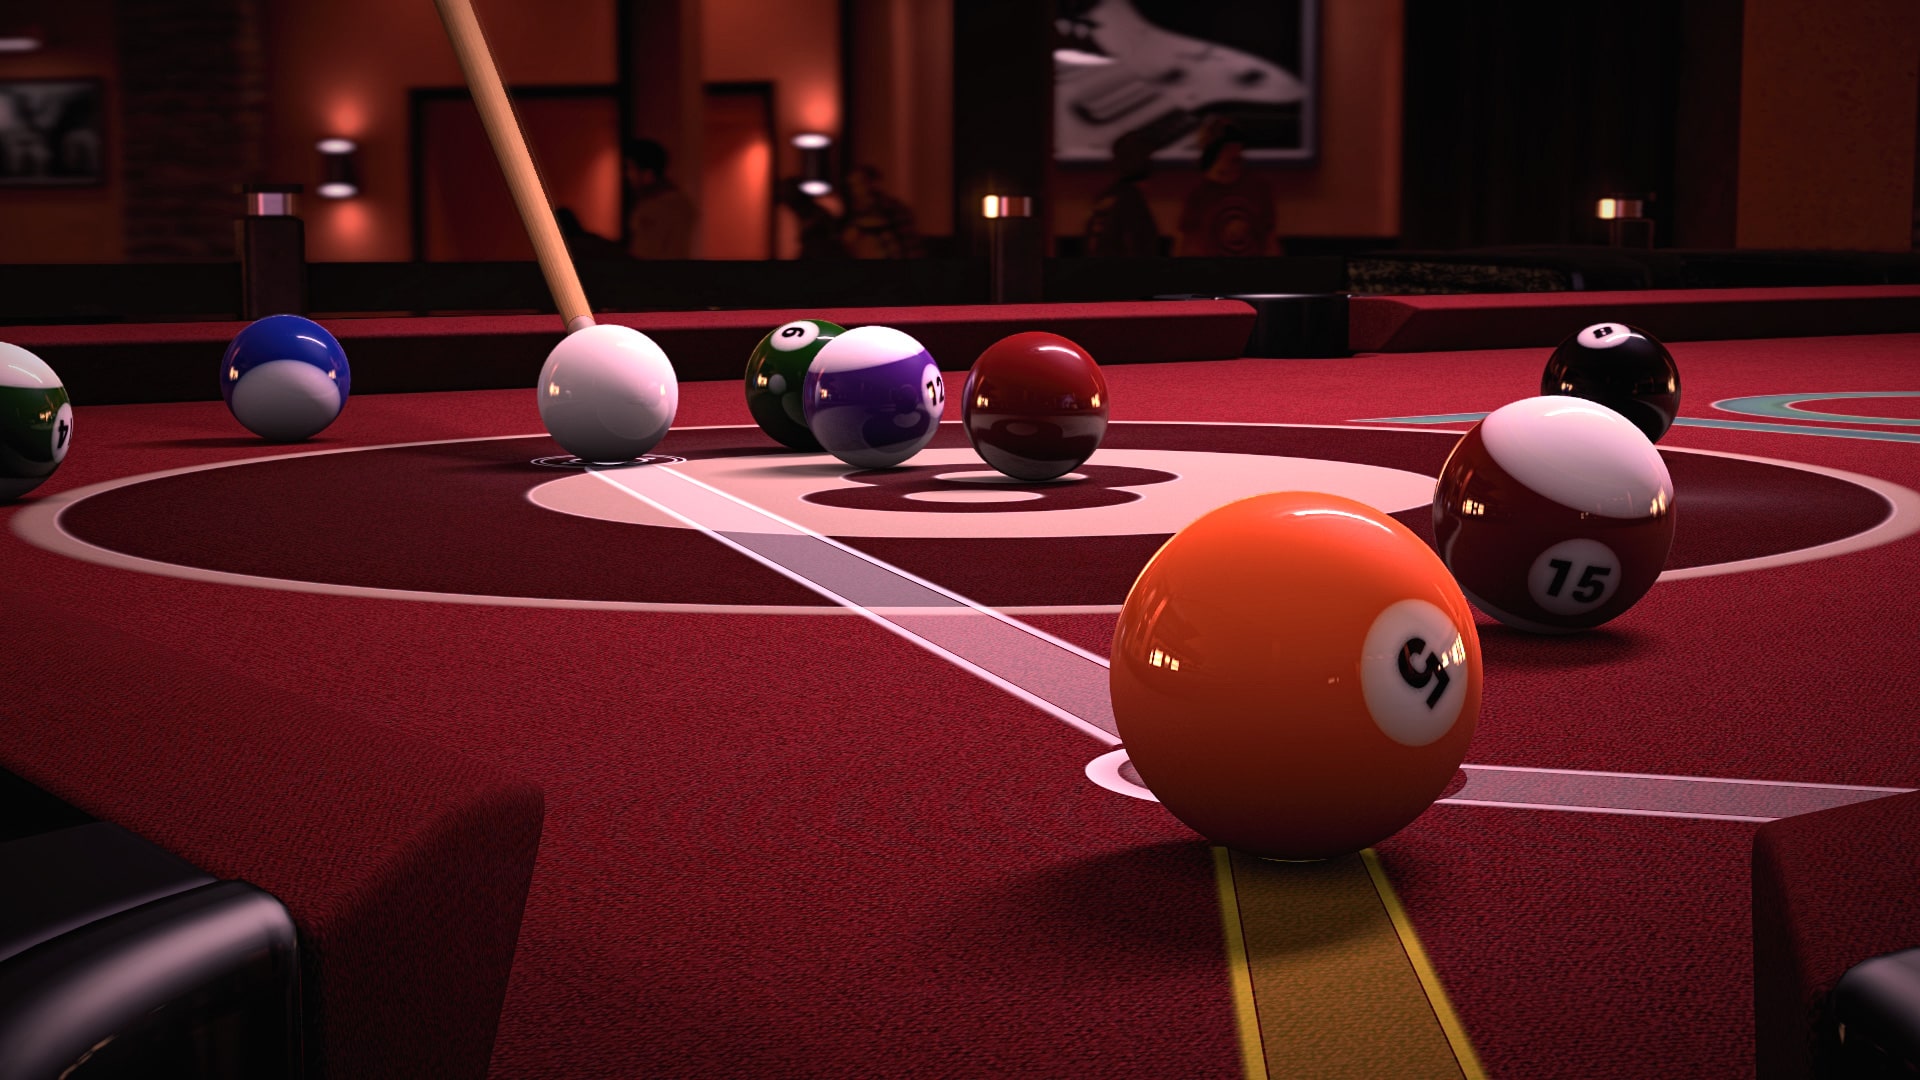 Pool Nation Snooker Bundle